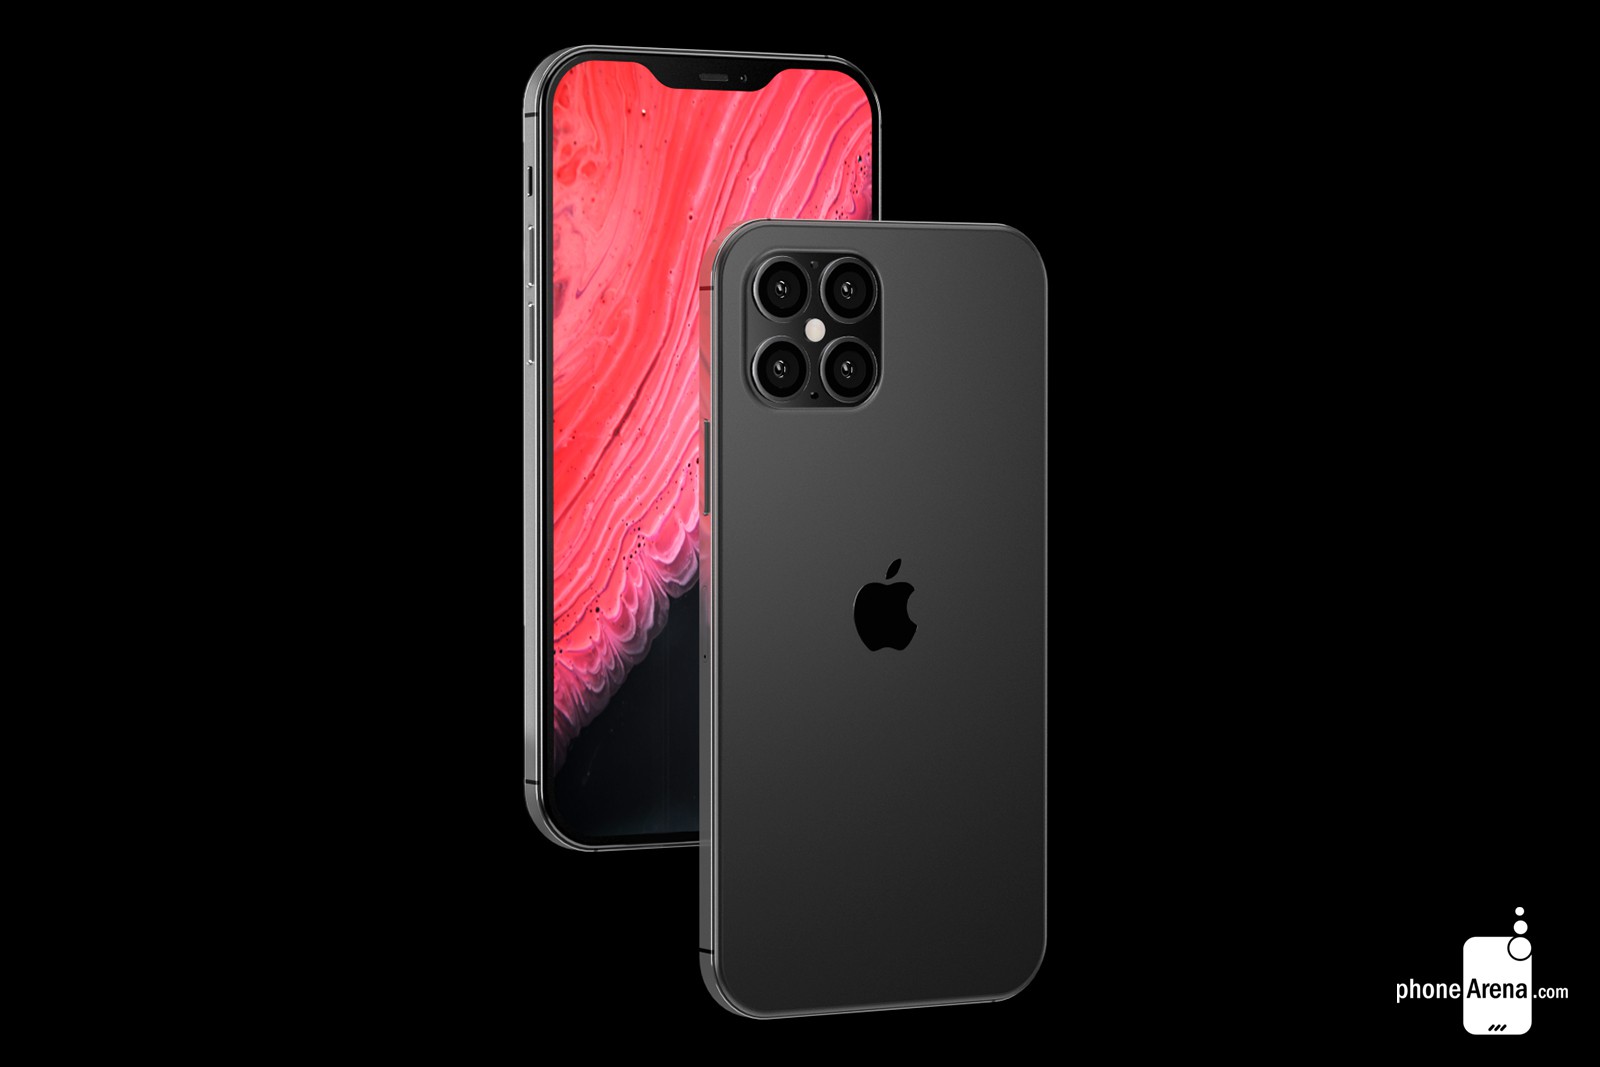 Cùng ngắm concept
iPhone 12 với thiết kế giống iPhone 4, 'tai thỏ'
nhỏ gọn hơn cùng 4 camera ở mặt lưng trông ra sao?